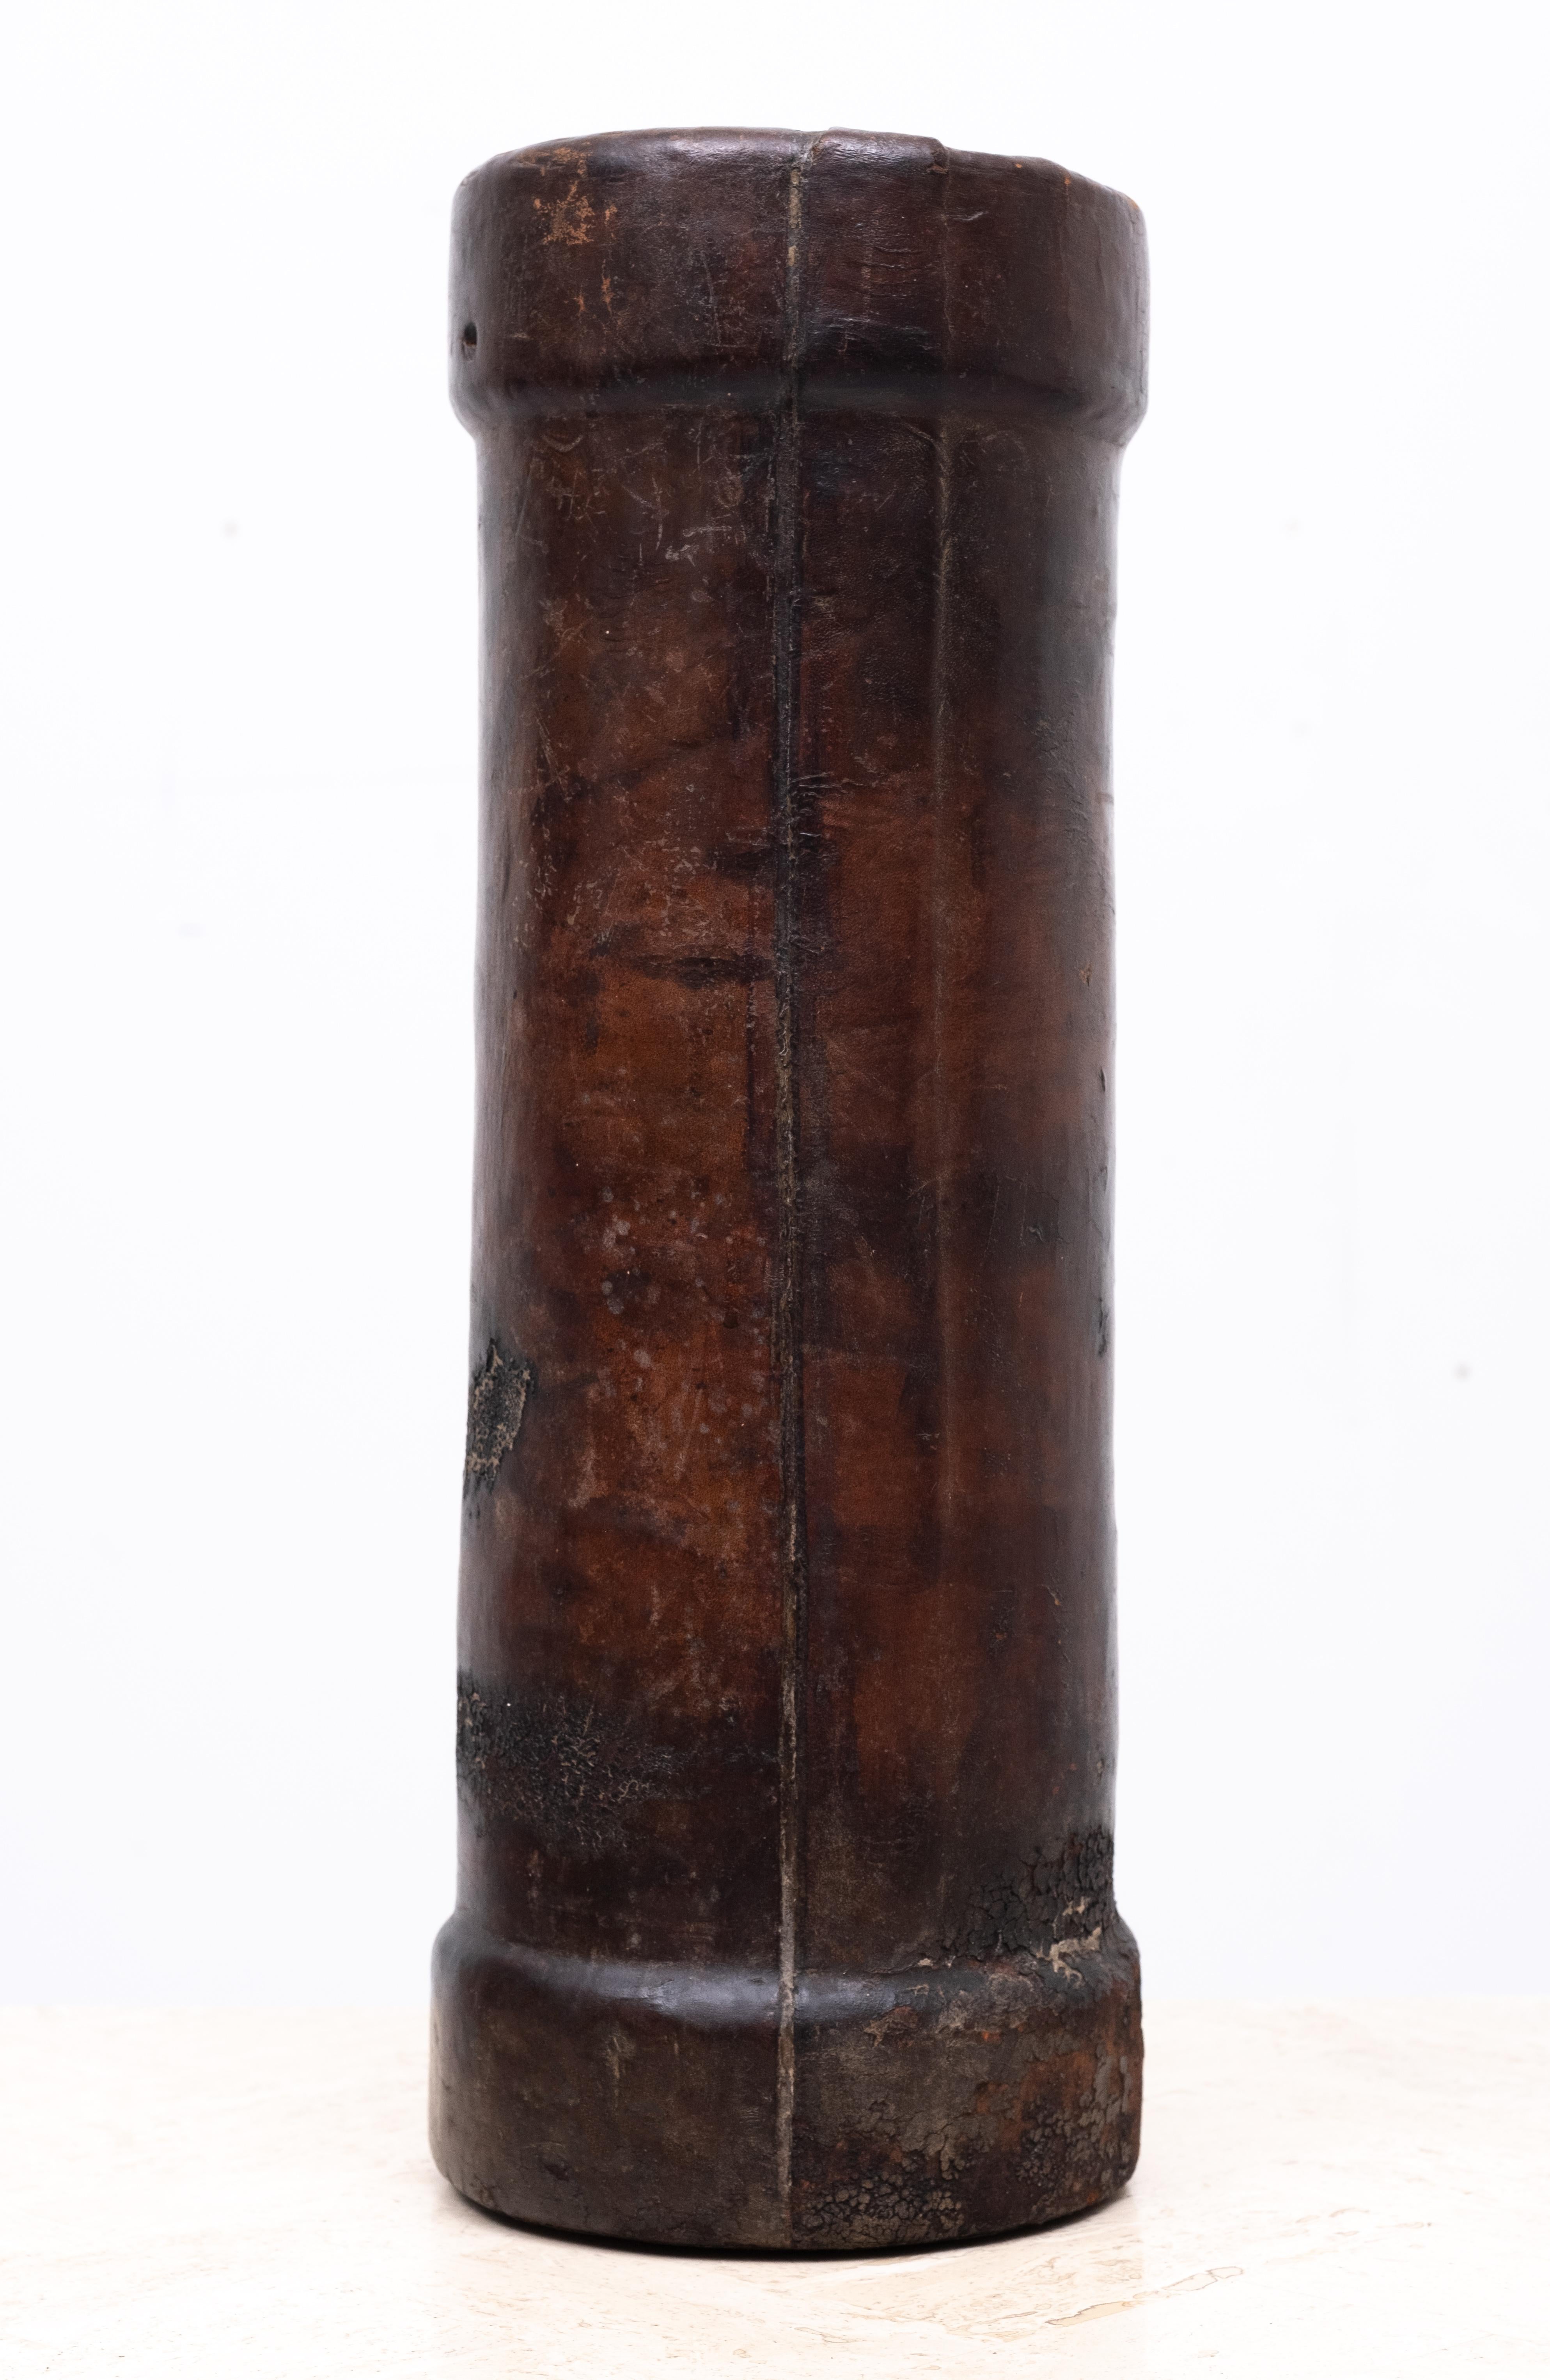 Englischer Leder-Kordit-Träger aus dem späten 19. Jahrhundert, der ursprüngliche Tragegriff ist verloren, einige Brandflecken 
marken, stark gebraucht. Jede Menge Patina. Schöne braune Farben. 

   